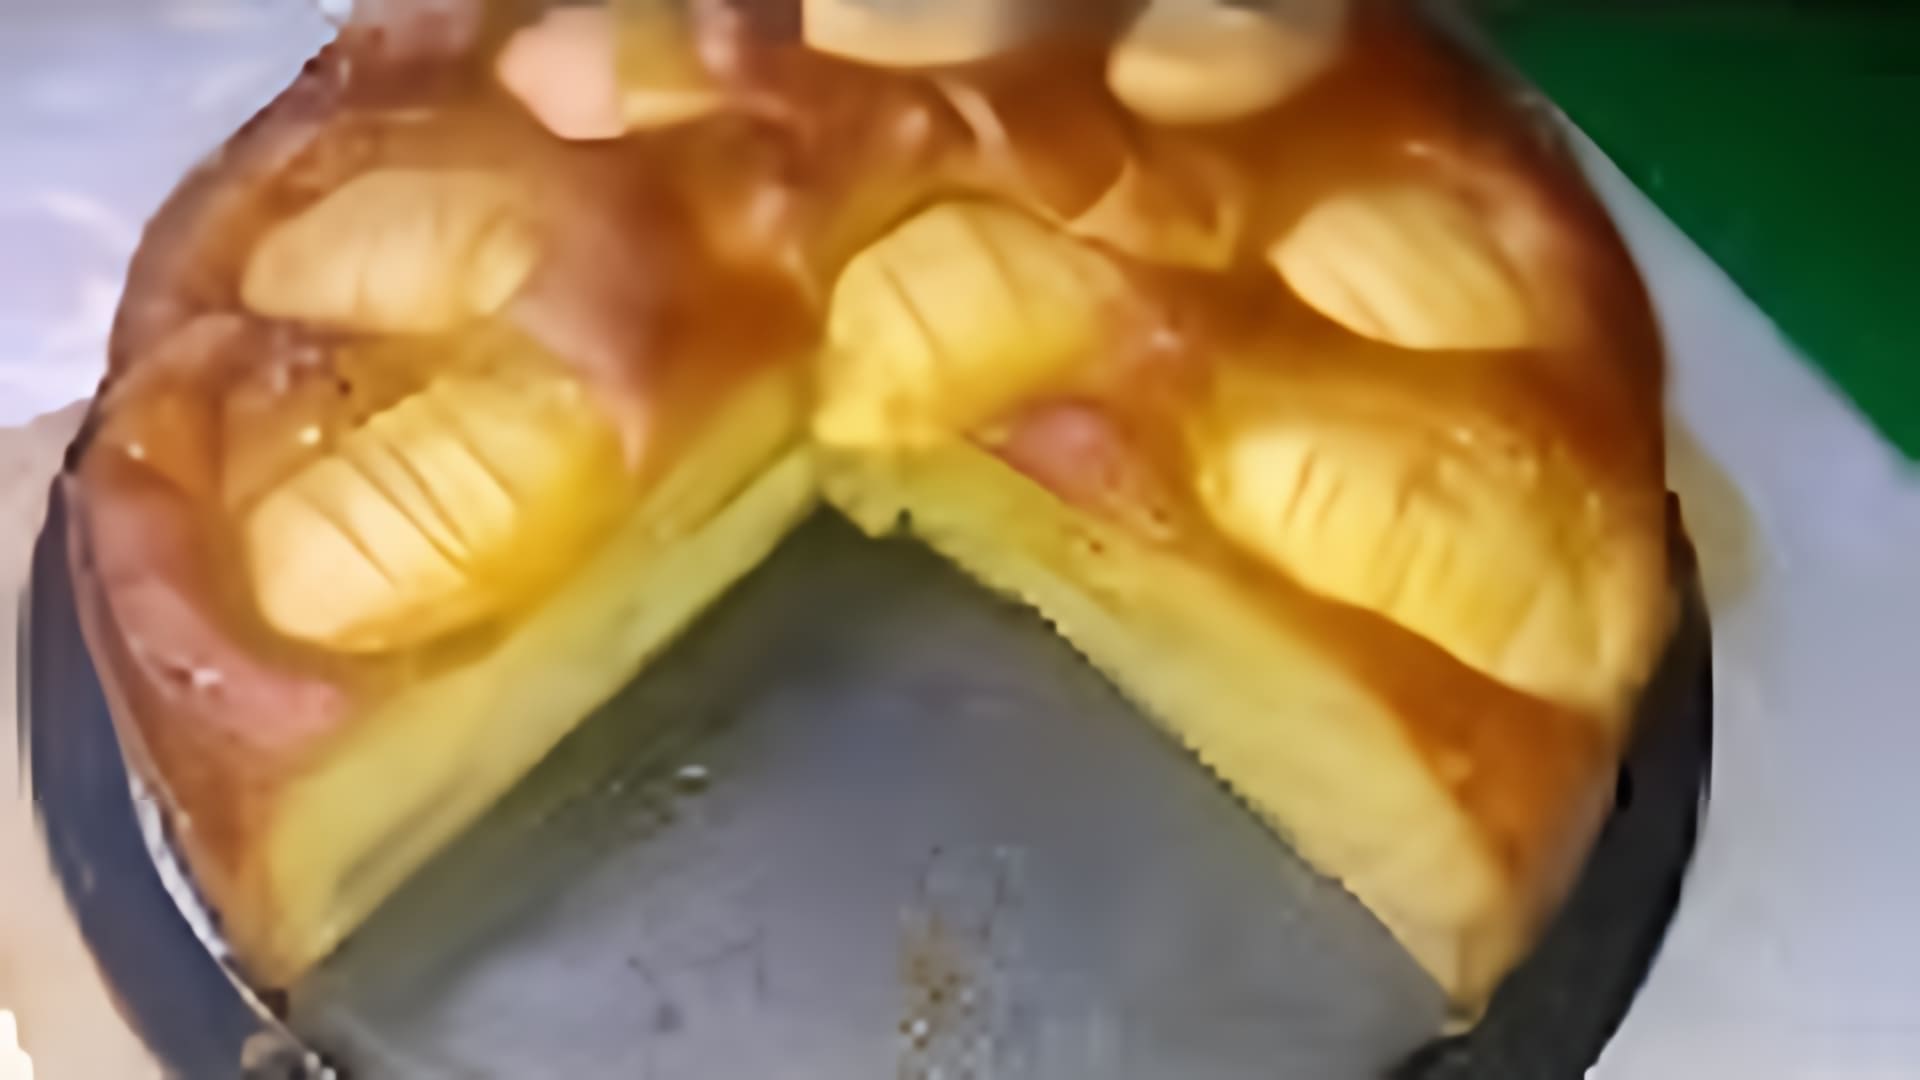 В этом видео демонстрируется процесс приготовления яблочного пирога, который называется шарлотка